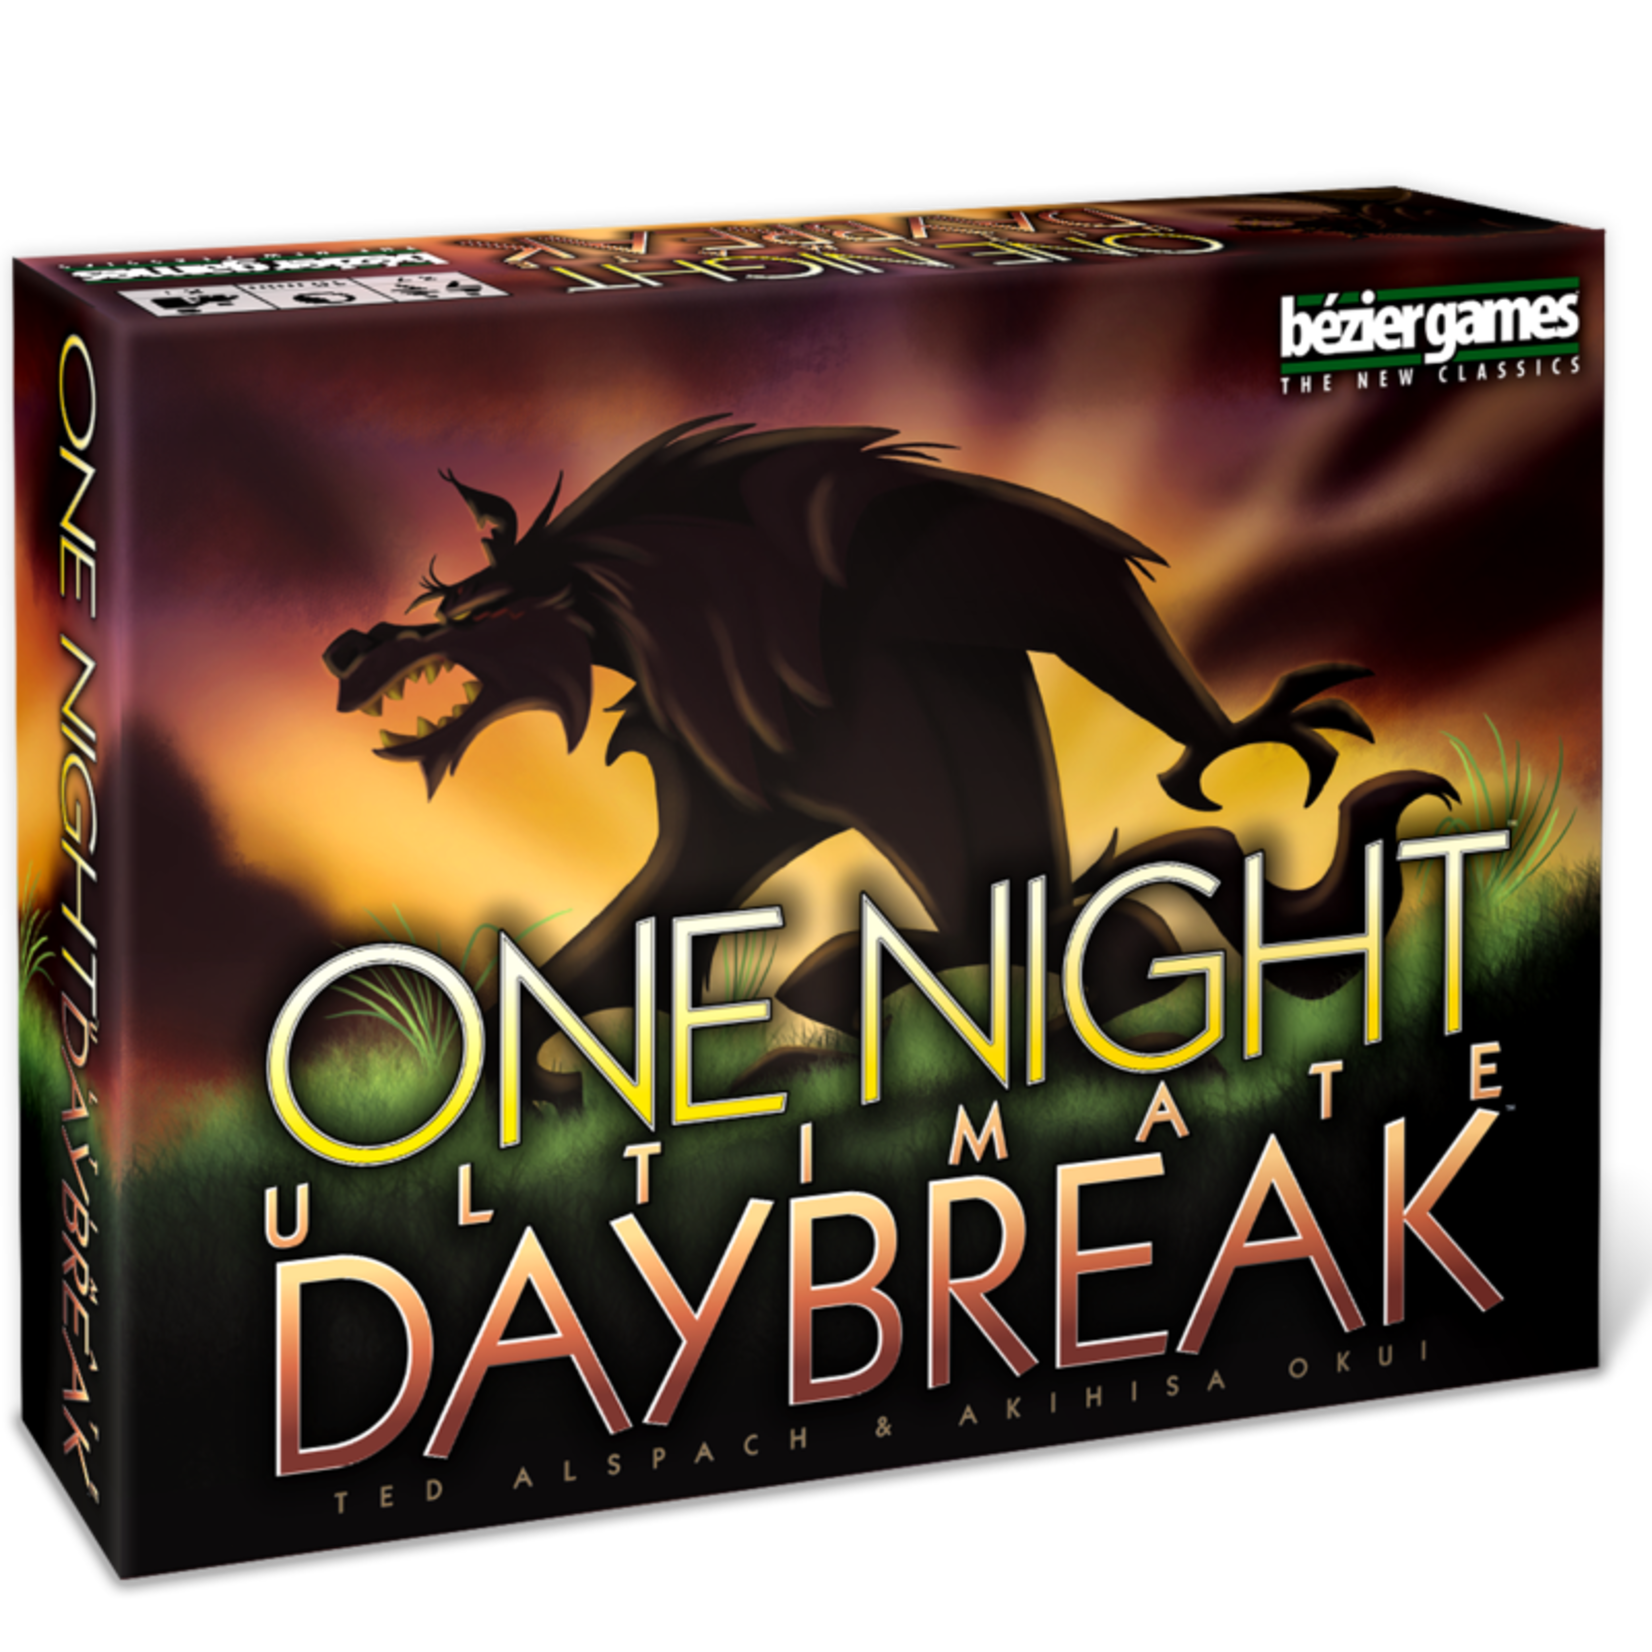 One Night Ultimate Werewolf - Bezier Games